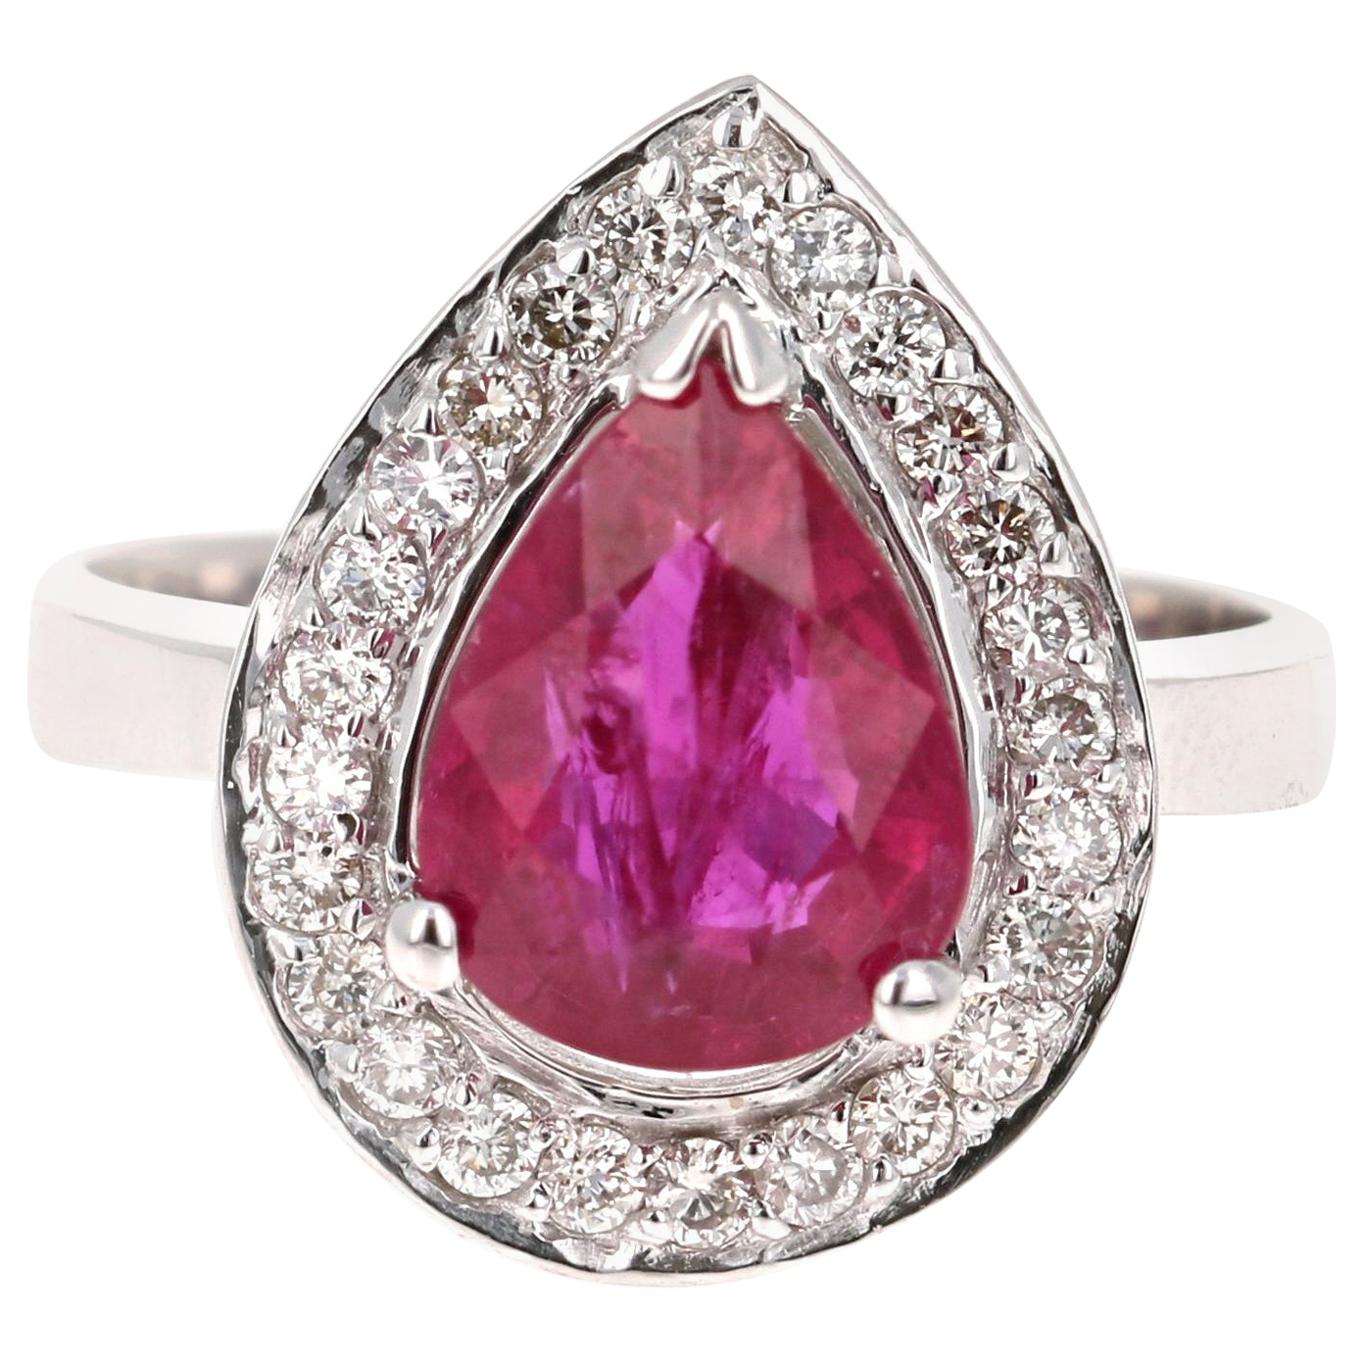 3.17 Carat Ruby Diamond 18 Karat White Gold Engagement Ring